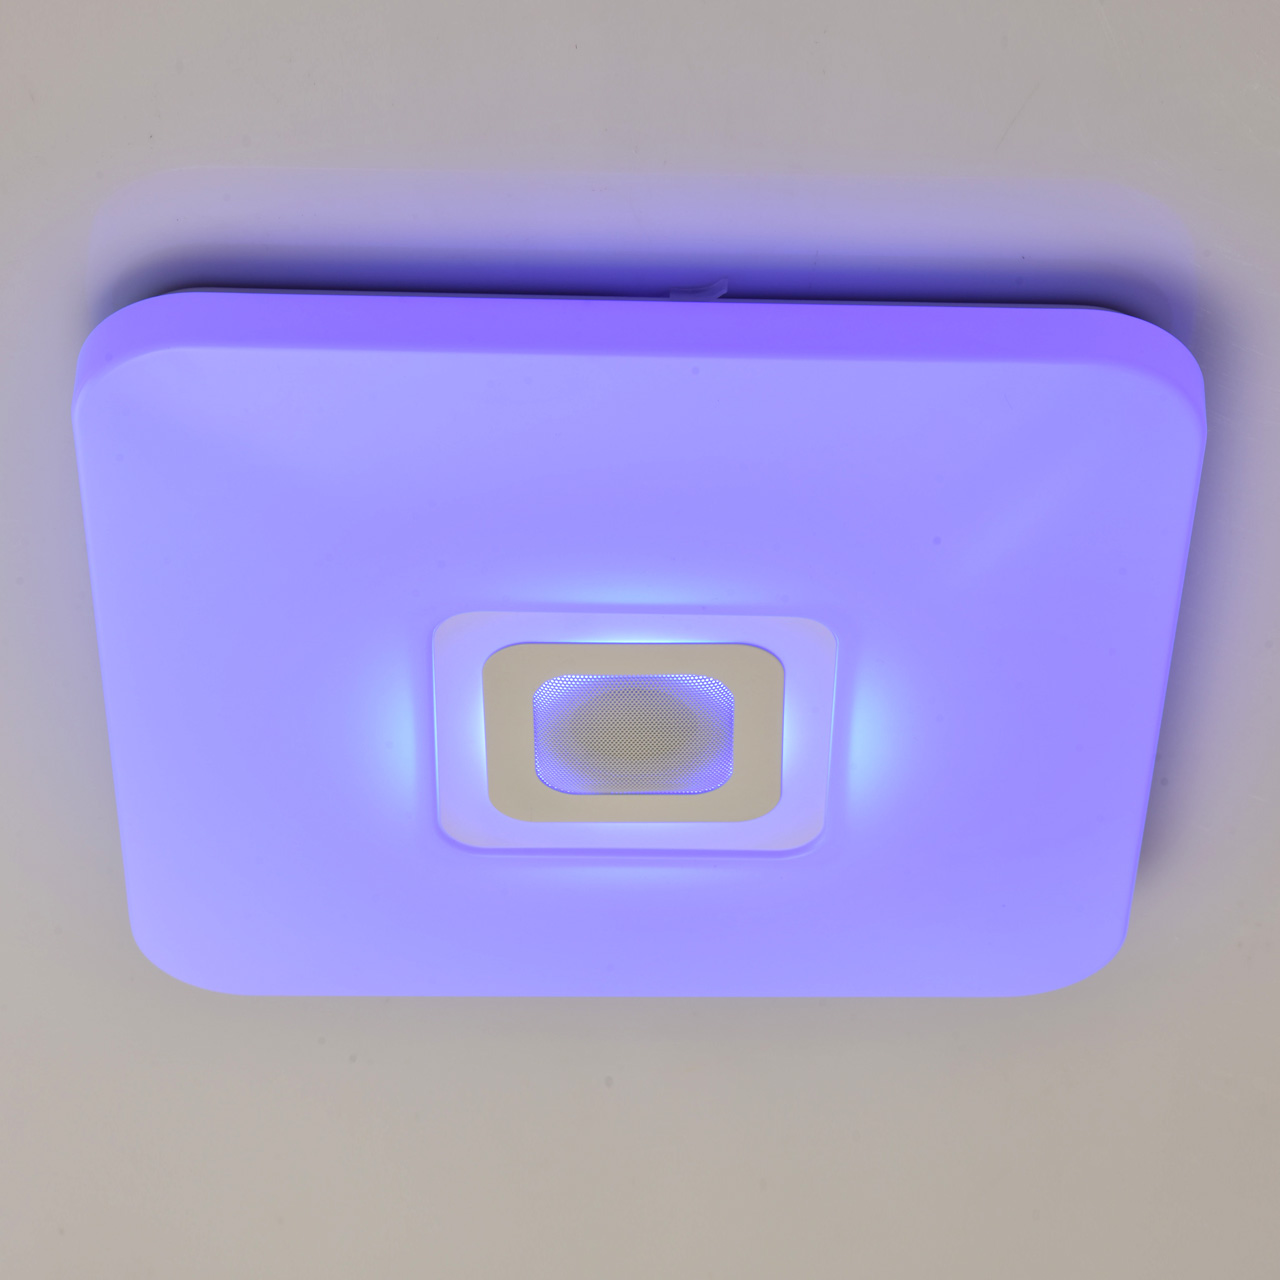 Plafon Sufitowy Led Z Kilkoma Trybami Oswietlenia I Glosnikiem Bluetooth